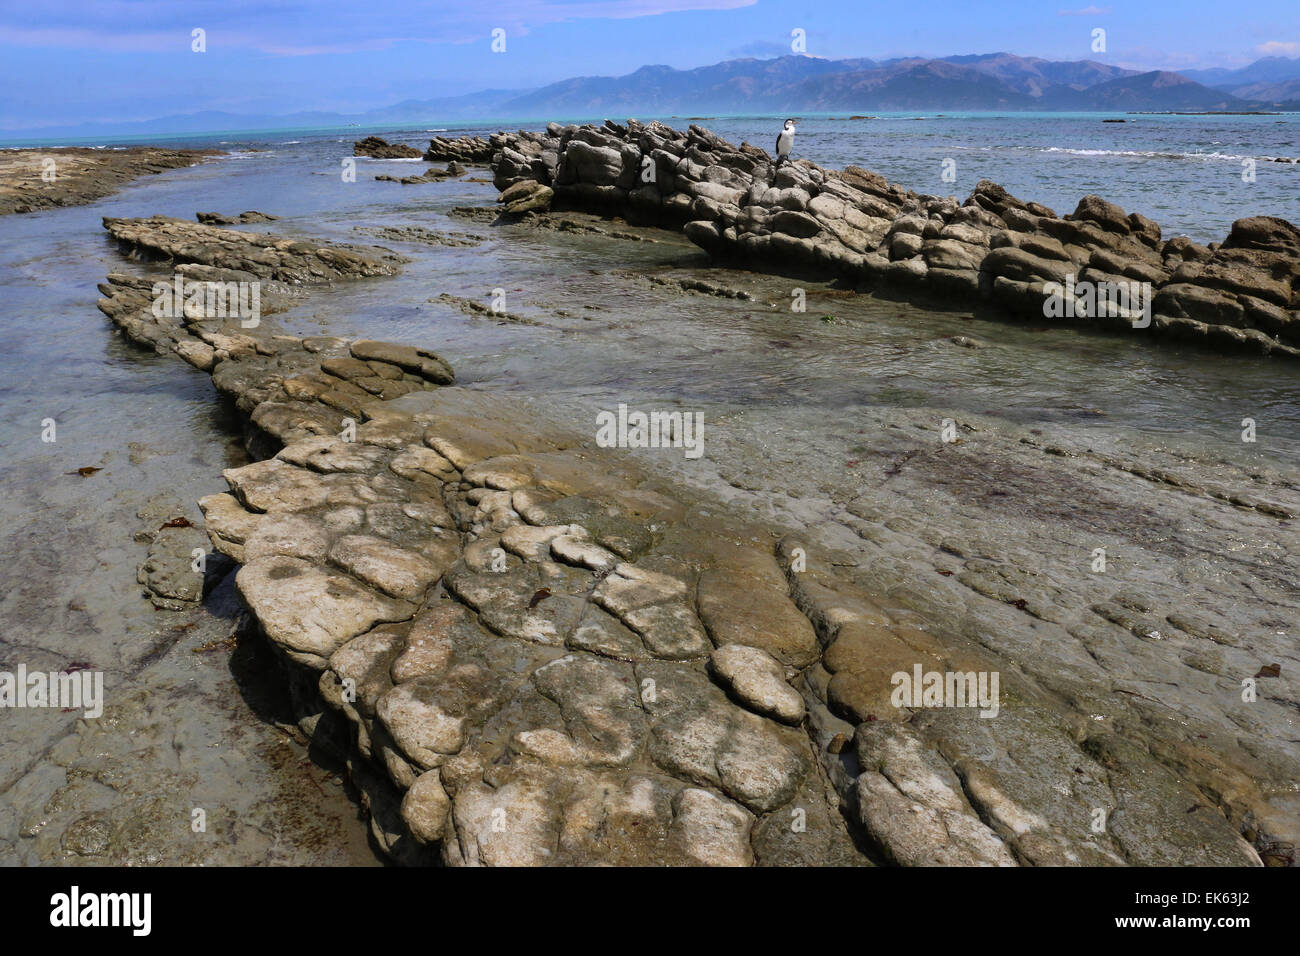 Shag en capas de roca caliza y pozas de marea de la península de Kaikoura, Isla del Sur, Nueva Zelanda Foto de stock